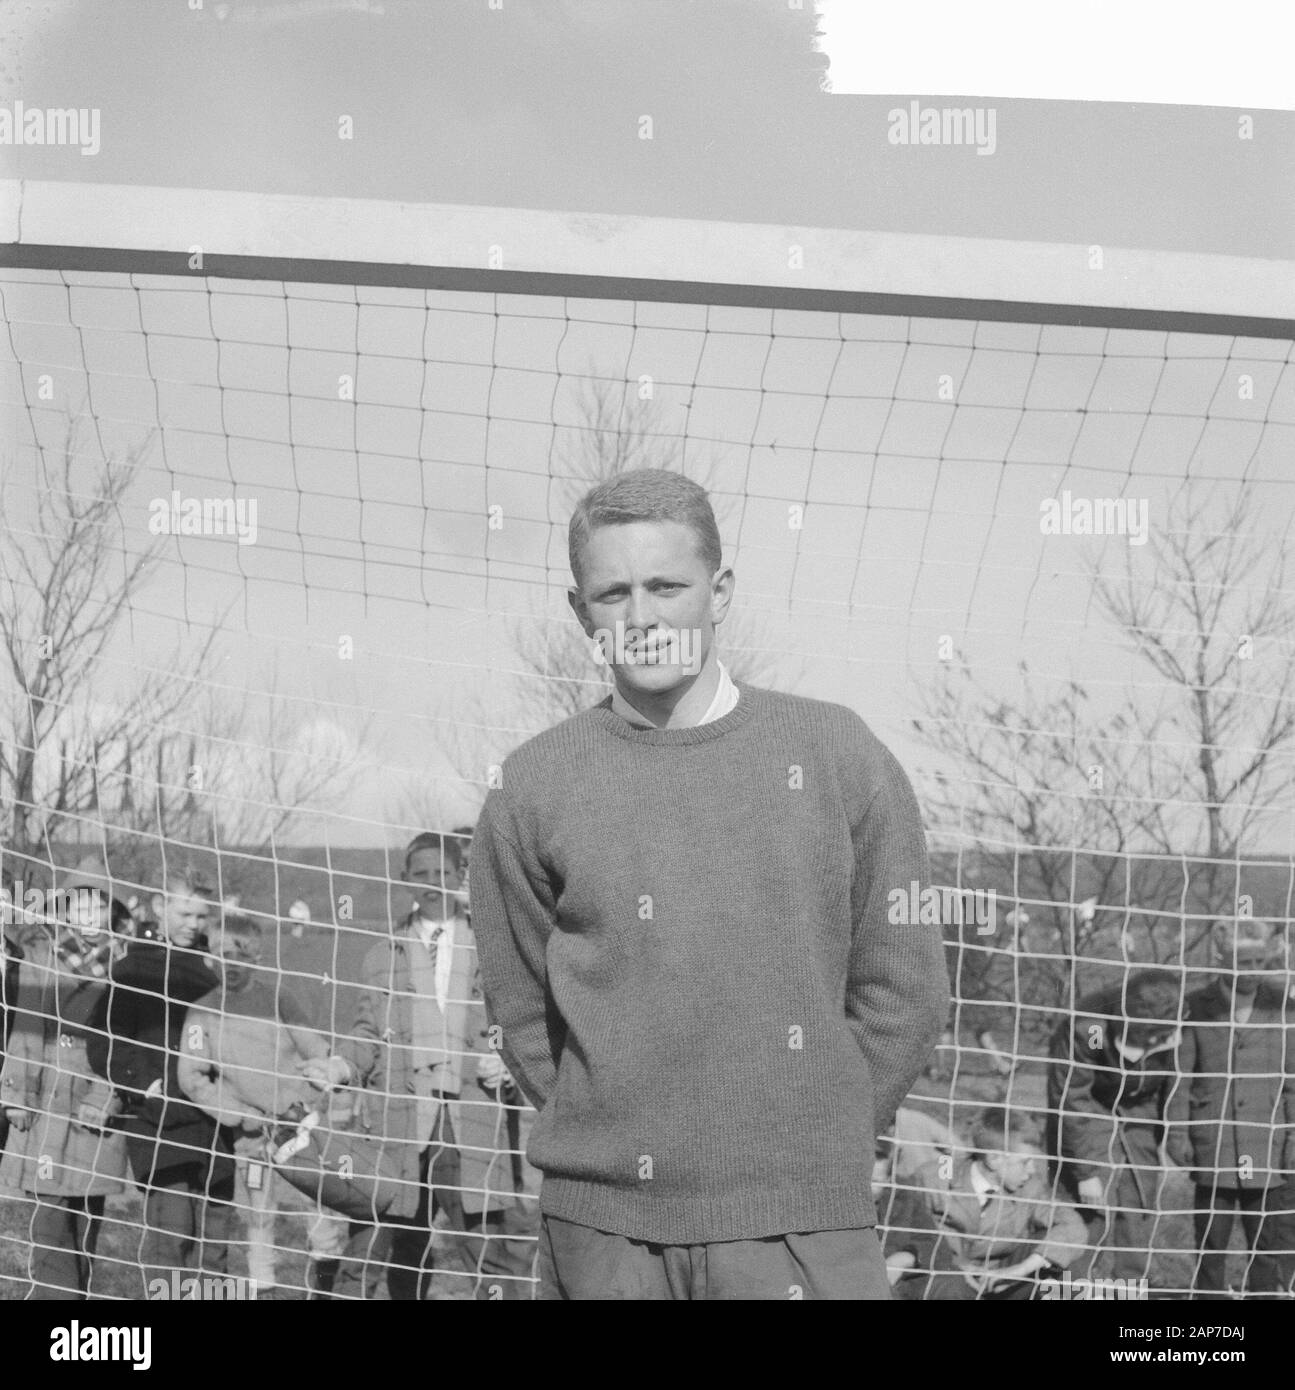 DCG vs. Kon. HGC 1-2. 1 dei portieri Data: 19 marzo 1961 Parole chiave: sport, calcio Foto Stock